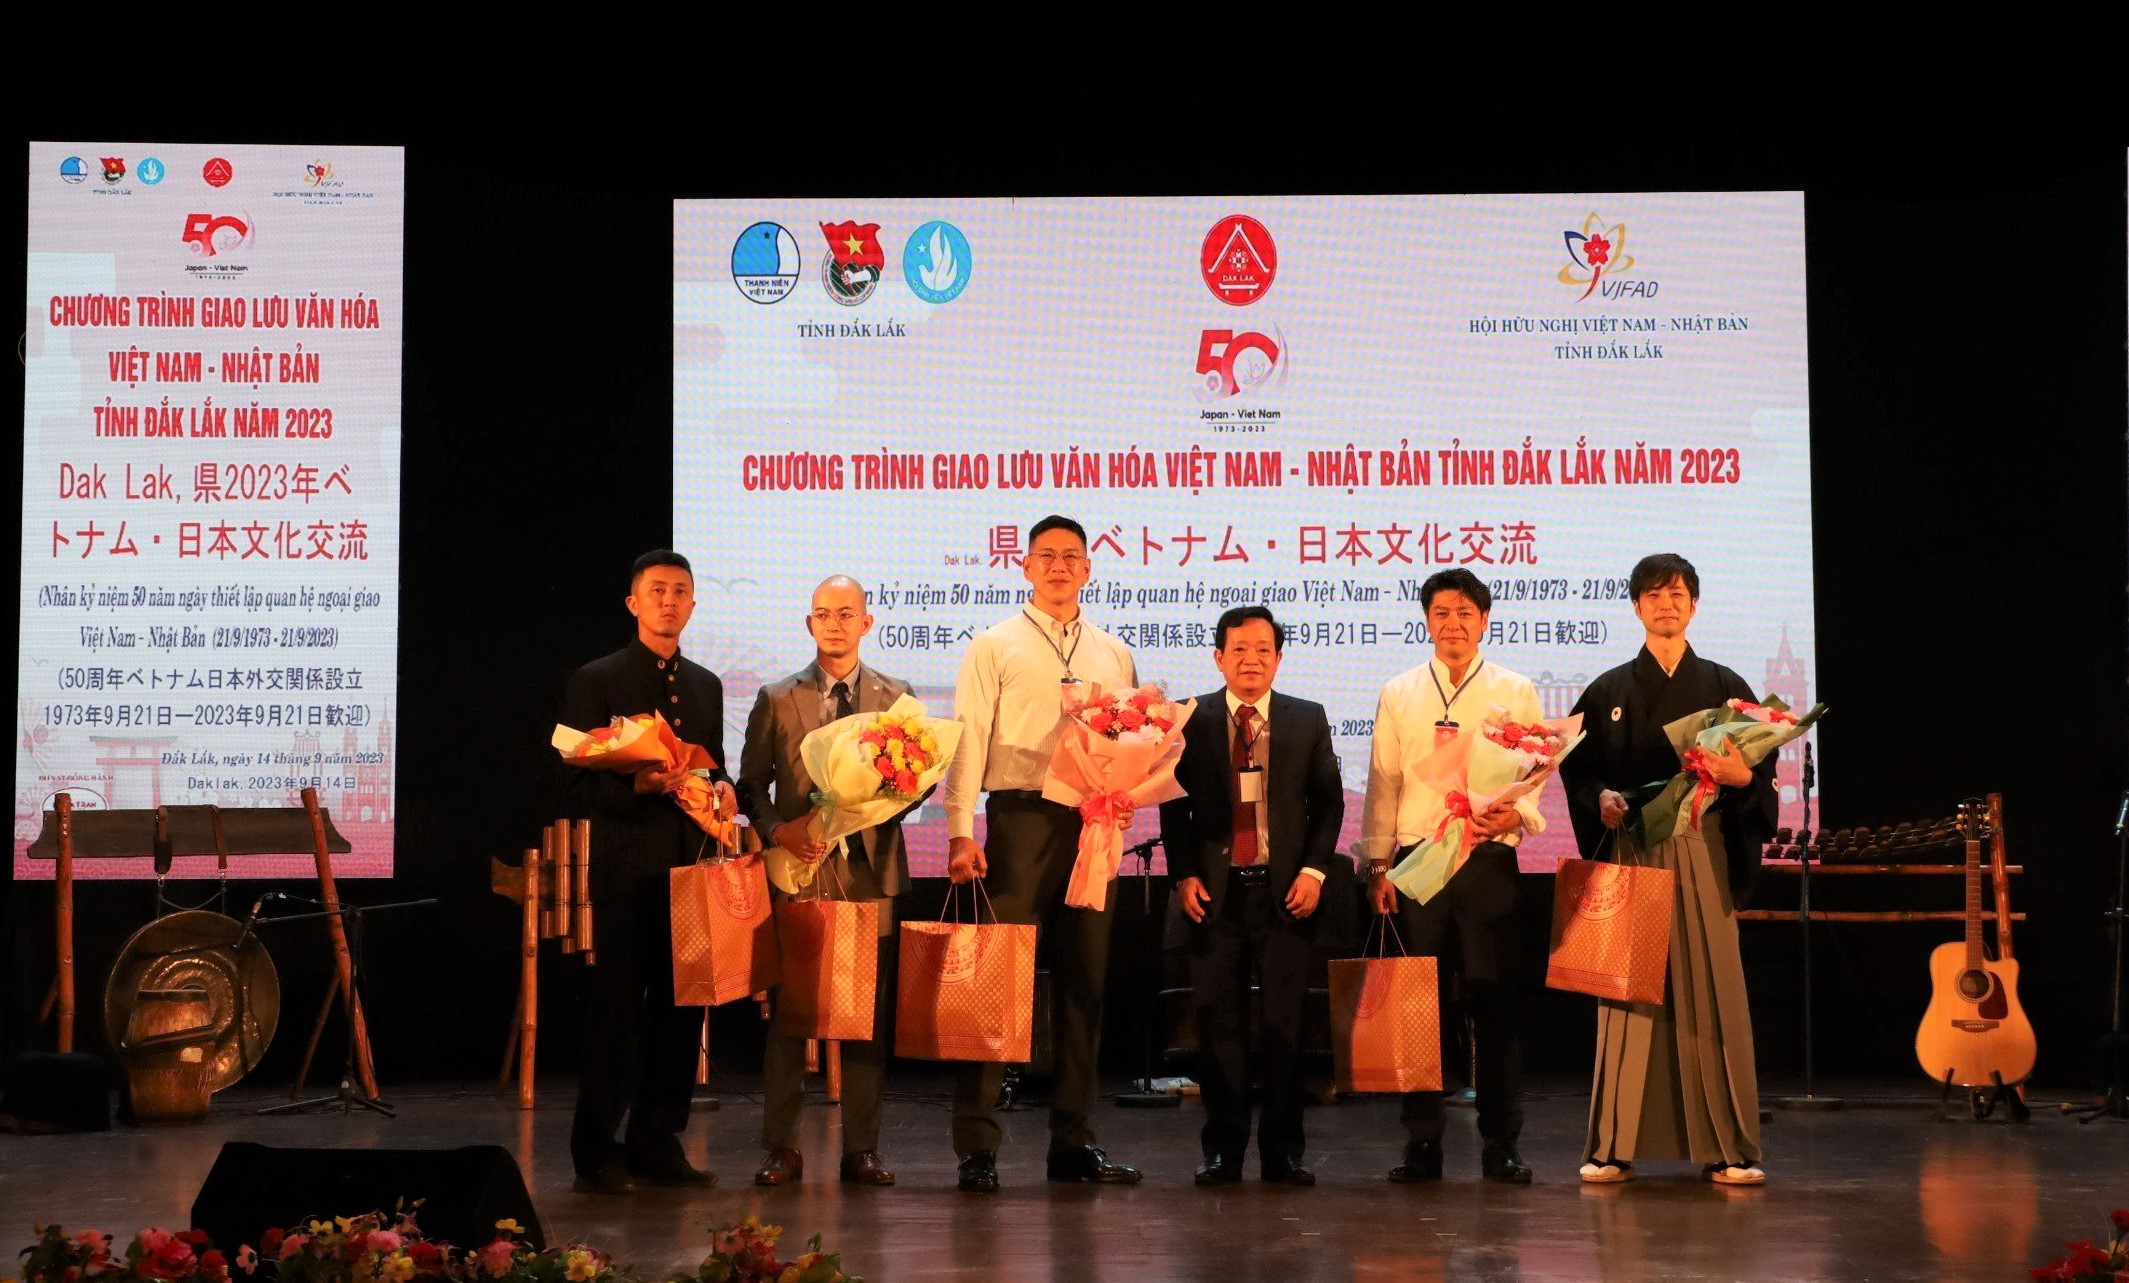 Giao lưu văn hóa Việt Nam – Nhật Bản tỉnh Đắk Lắk năm 2023